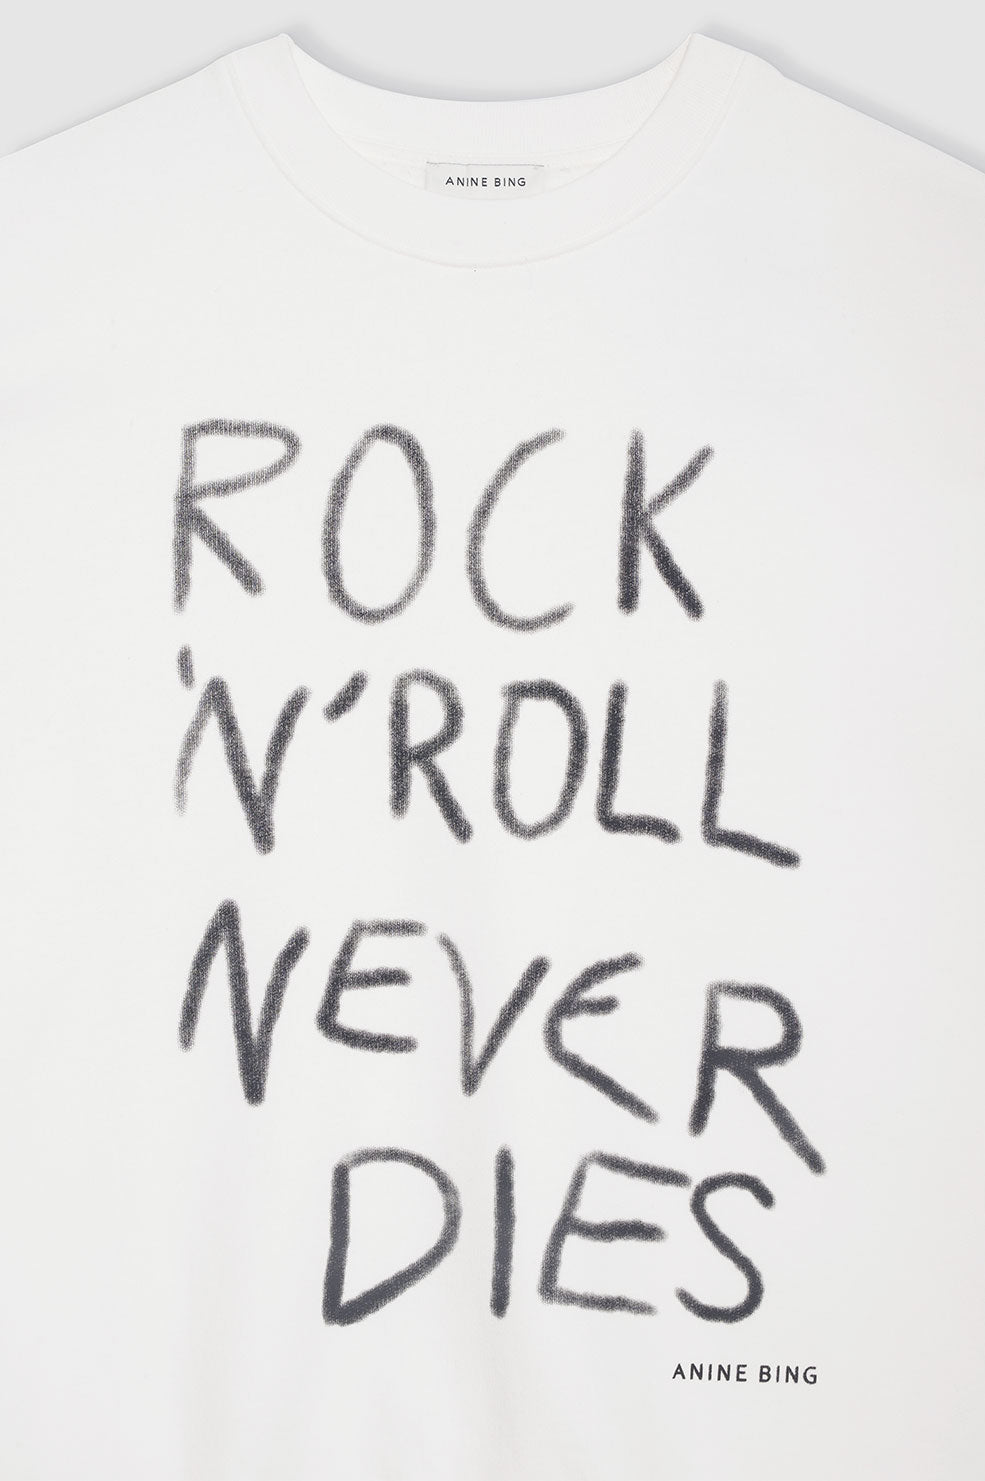 ANINE BING Miles Sweatshirt Rock N Roll - Ivory - Detail View